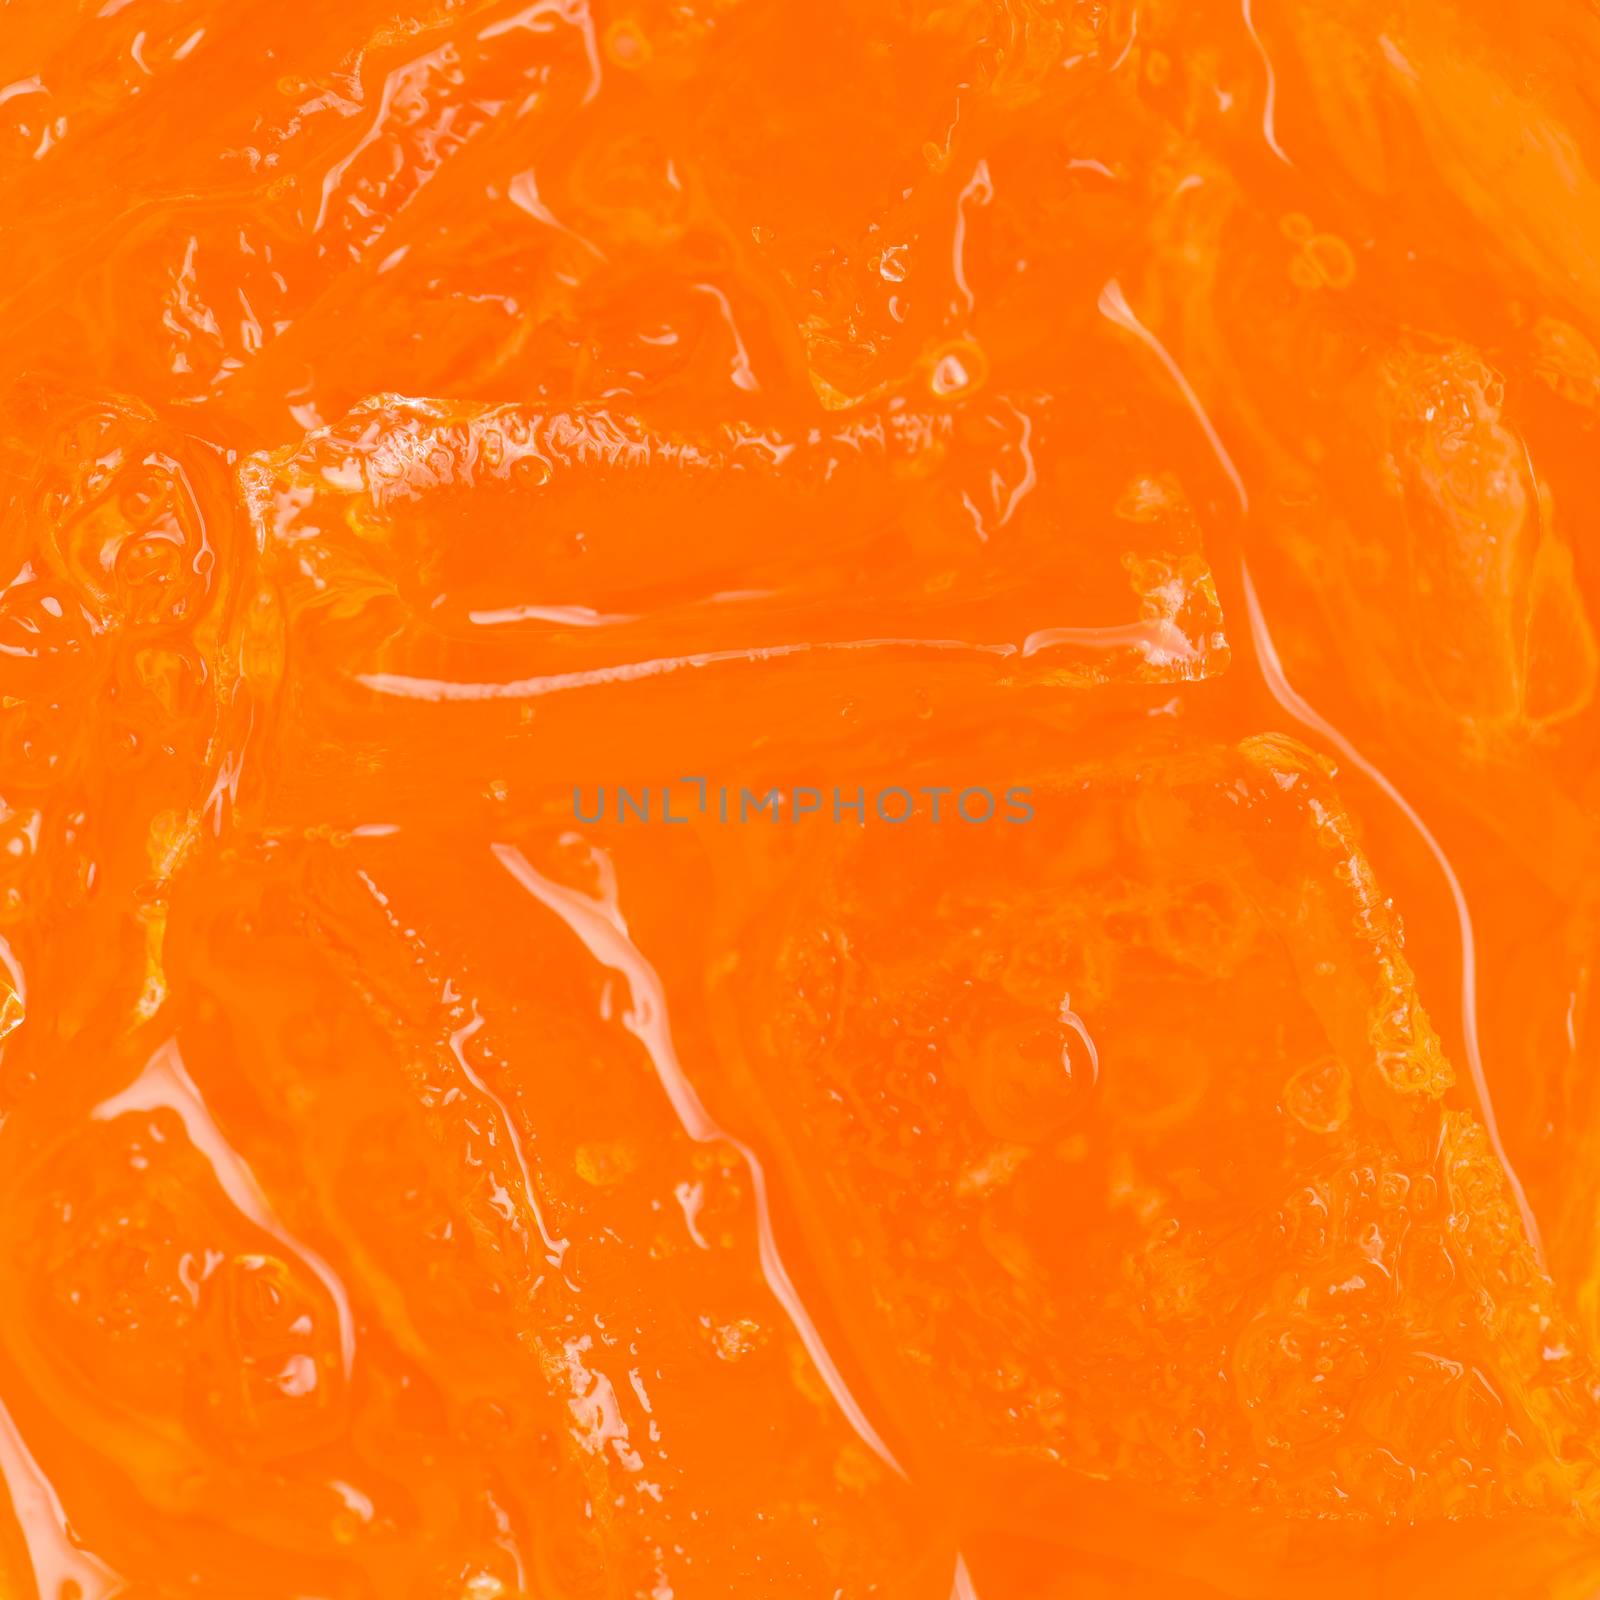 orange soda with ice background